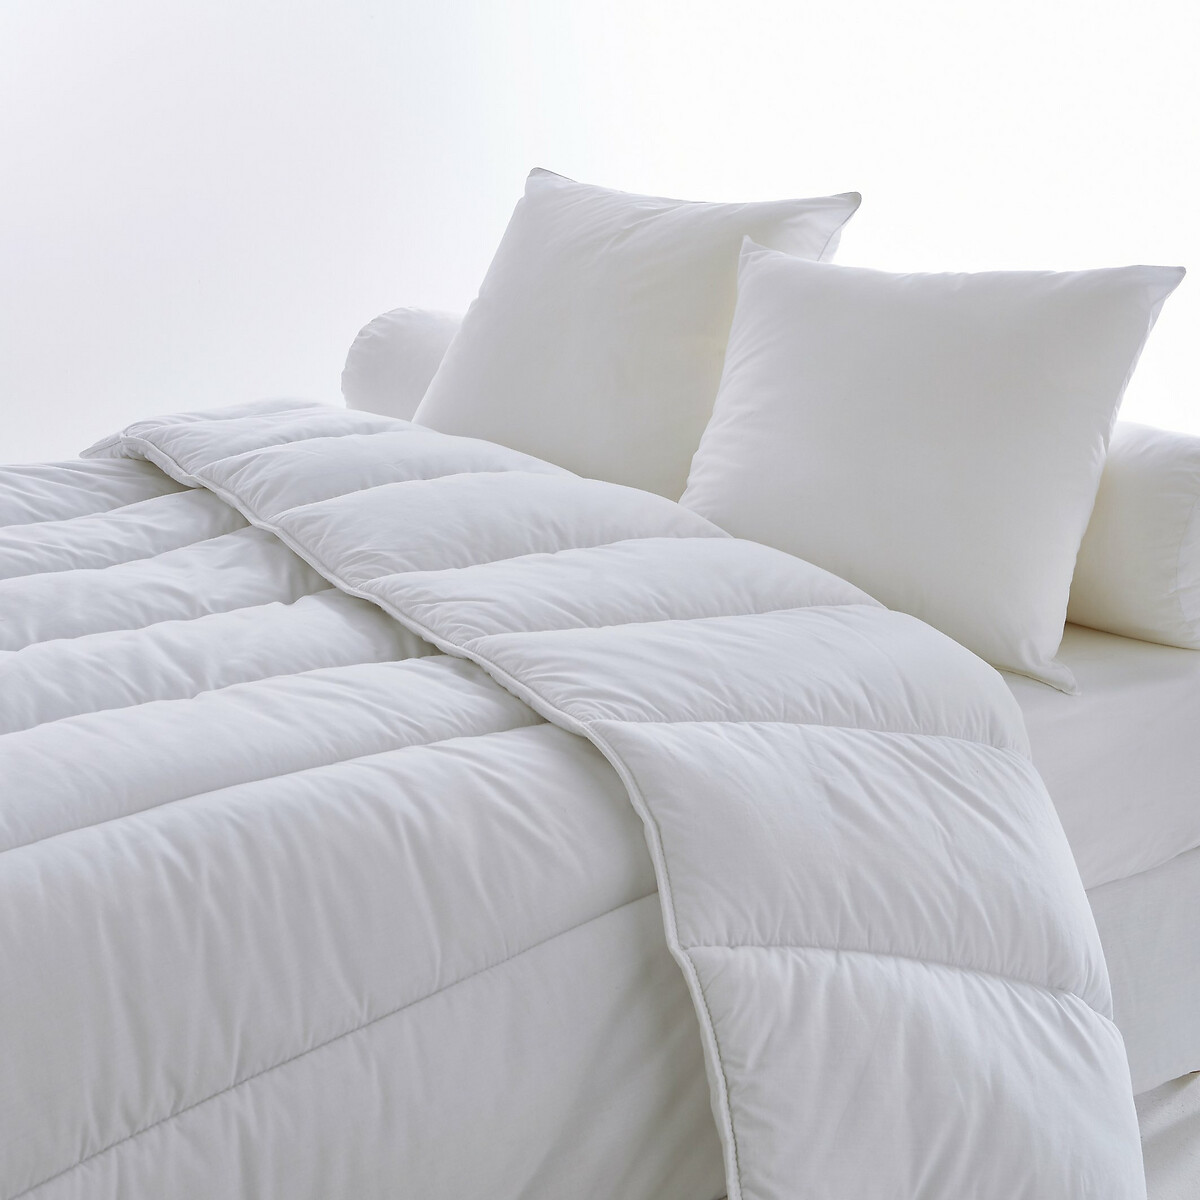 Комплект из микрофибры одеяло 1-сп REVERIE подушка 140 x 200 см белый, размер 140 x 200 см